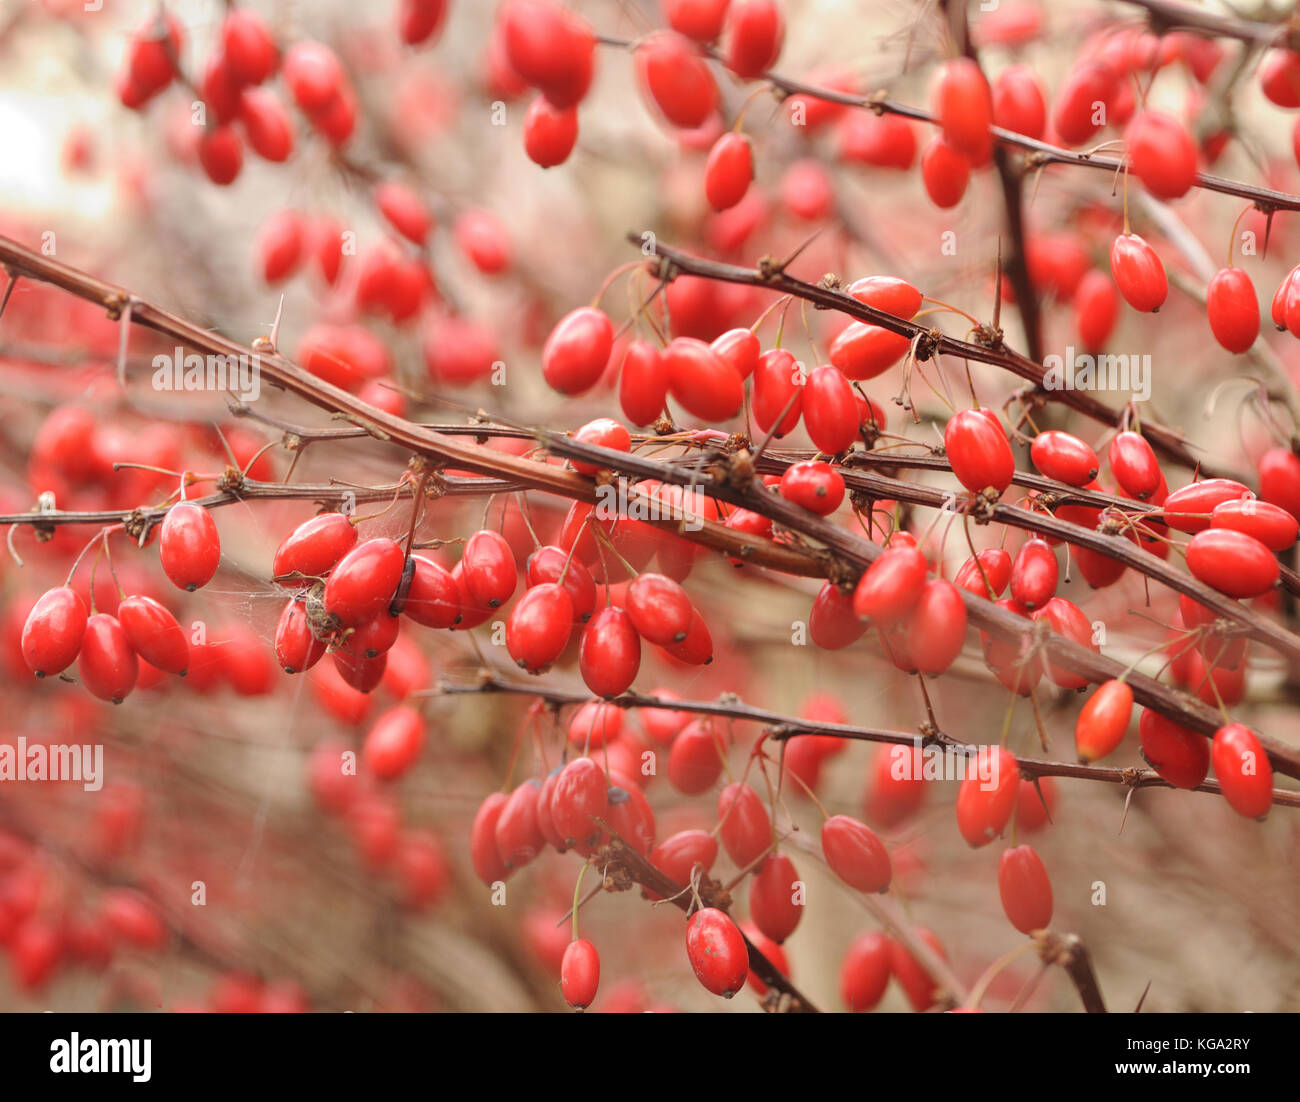 Rote Beeren an einer dornigen Berberishecke, nachdem die Blätter im Herbst gefallen sind. Topsham, Devon, Großbritannien. Stockfoto